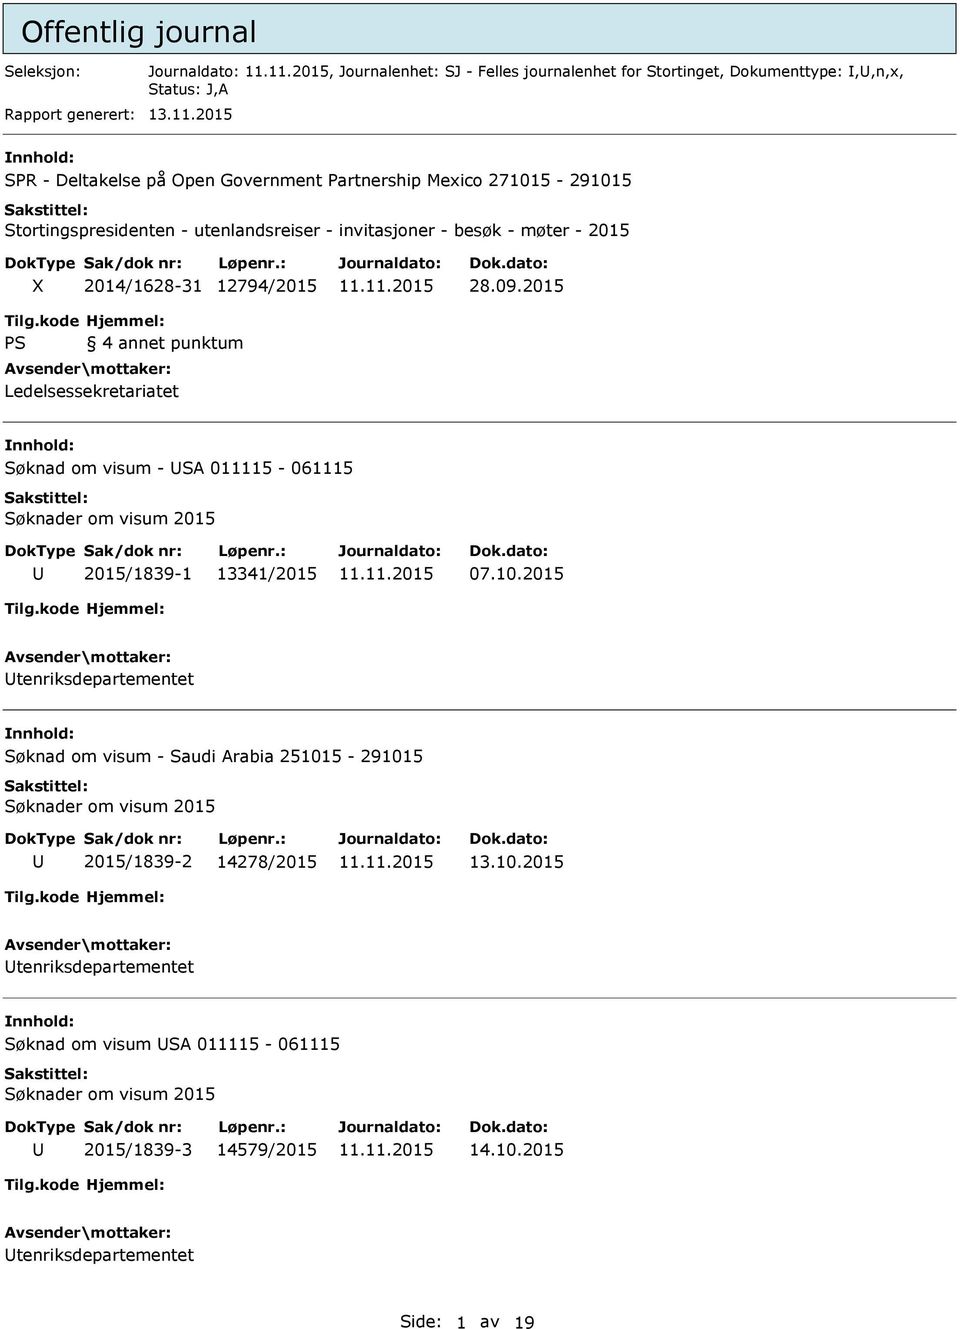 2015 Tilg.kode PS Hjemmel: 4 annet punktum Ledelsessekretariatet Søknad om visum - SA 011115-061115 Søknader om visum 2015 2015/1839-1 13341/2015 07.10.